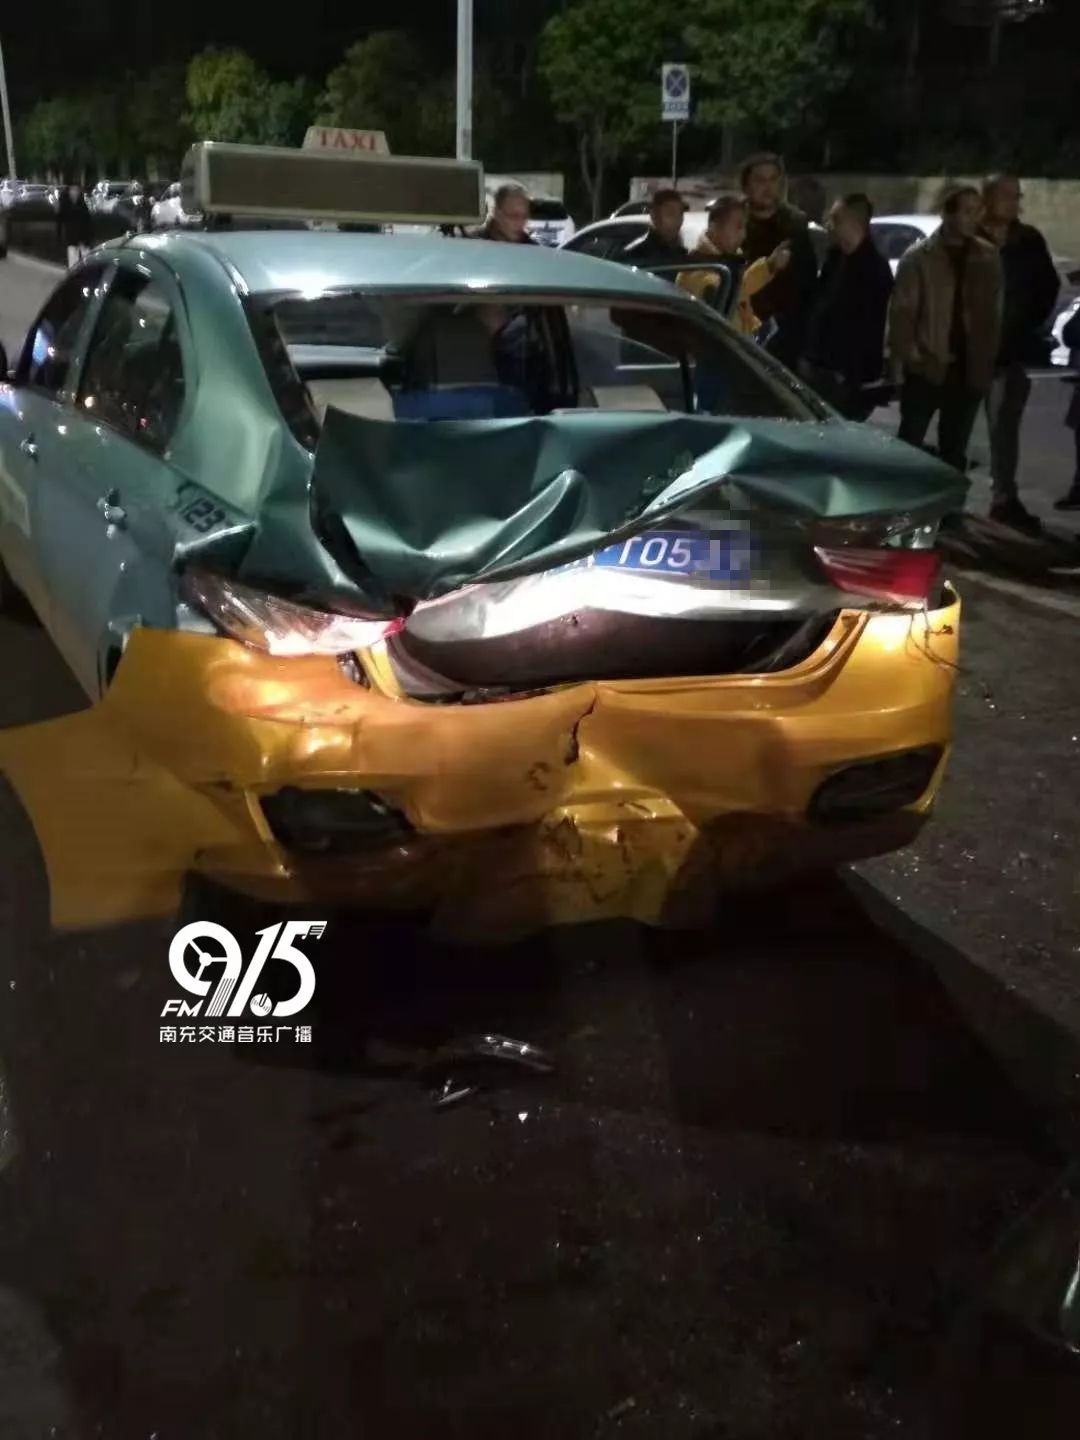 昨晚,南充一出租车后备箱被撞凹陷,肇事私家车驾驶员涉嫌